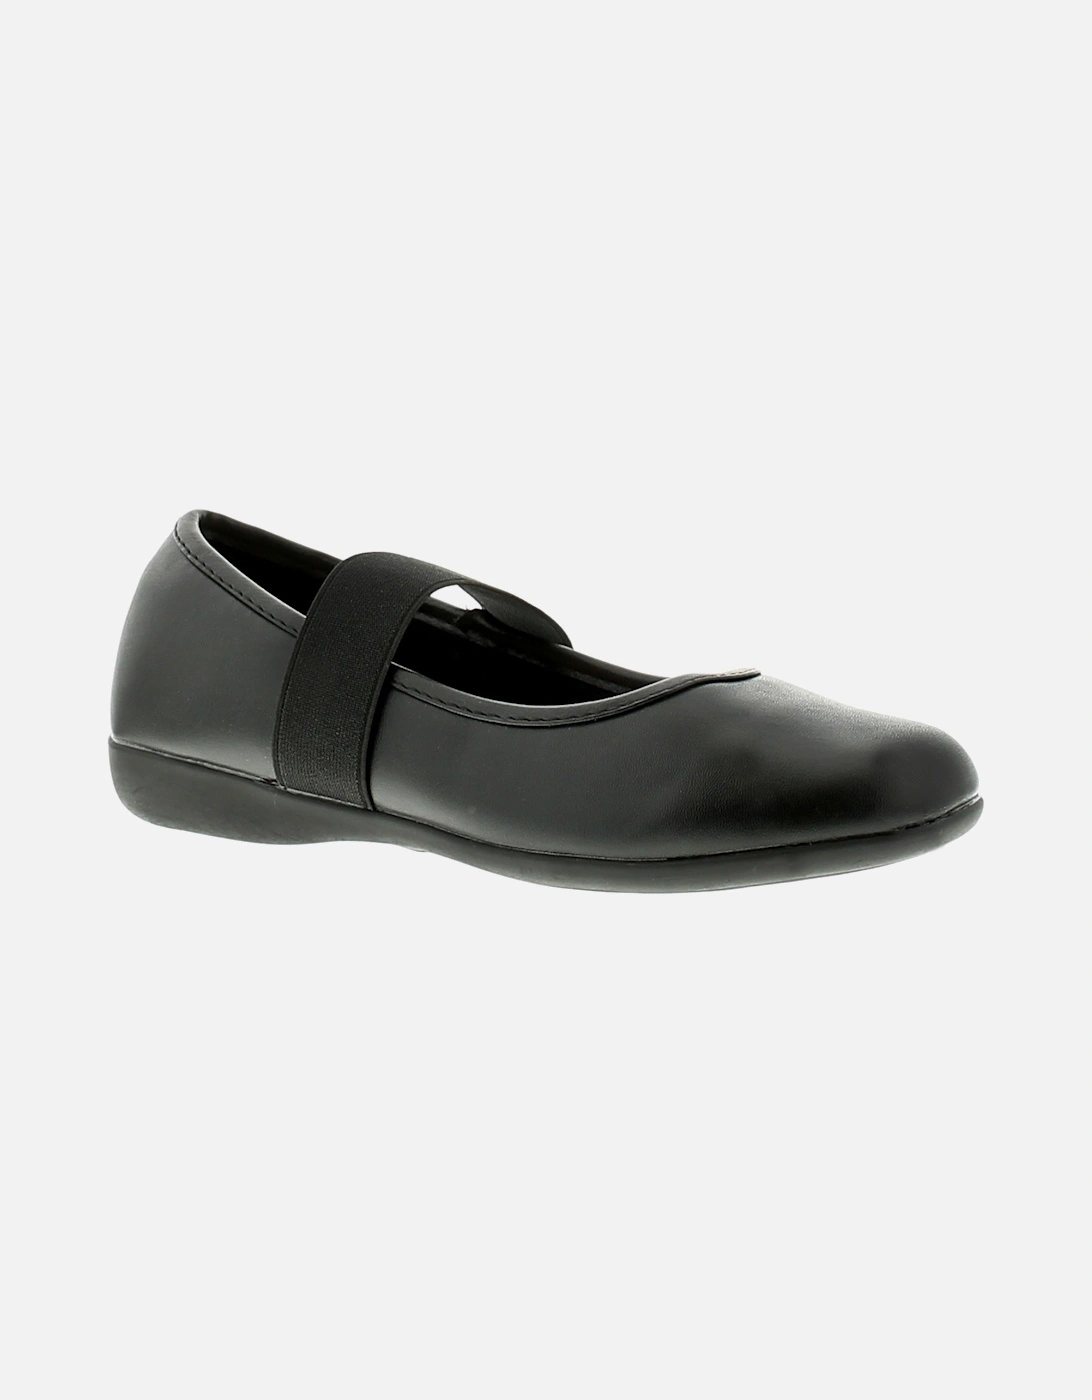 Womens Flat Shoes Alice Slip On black UK Size, 6 of 5